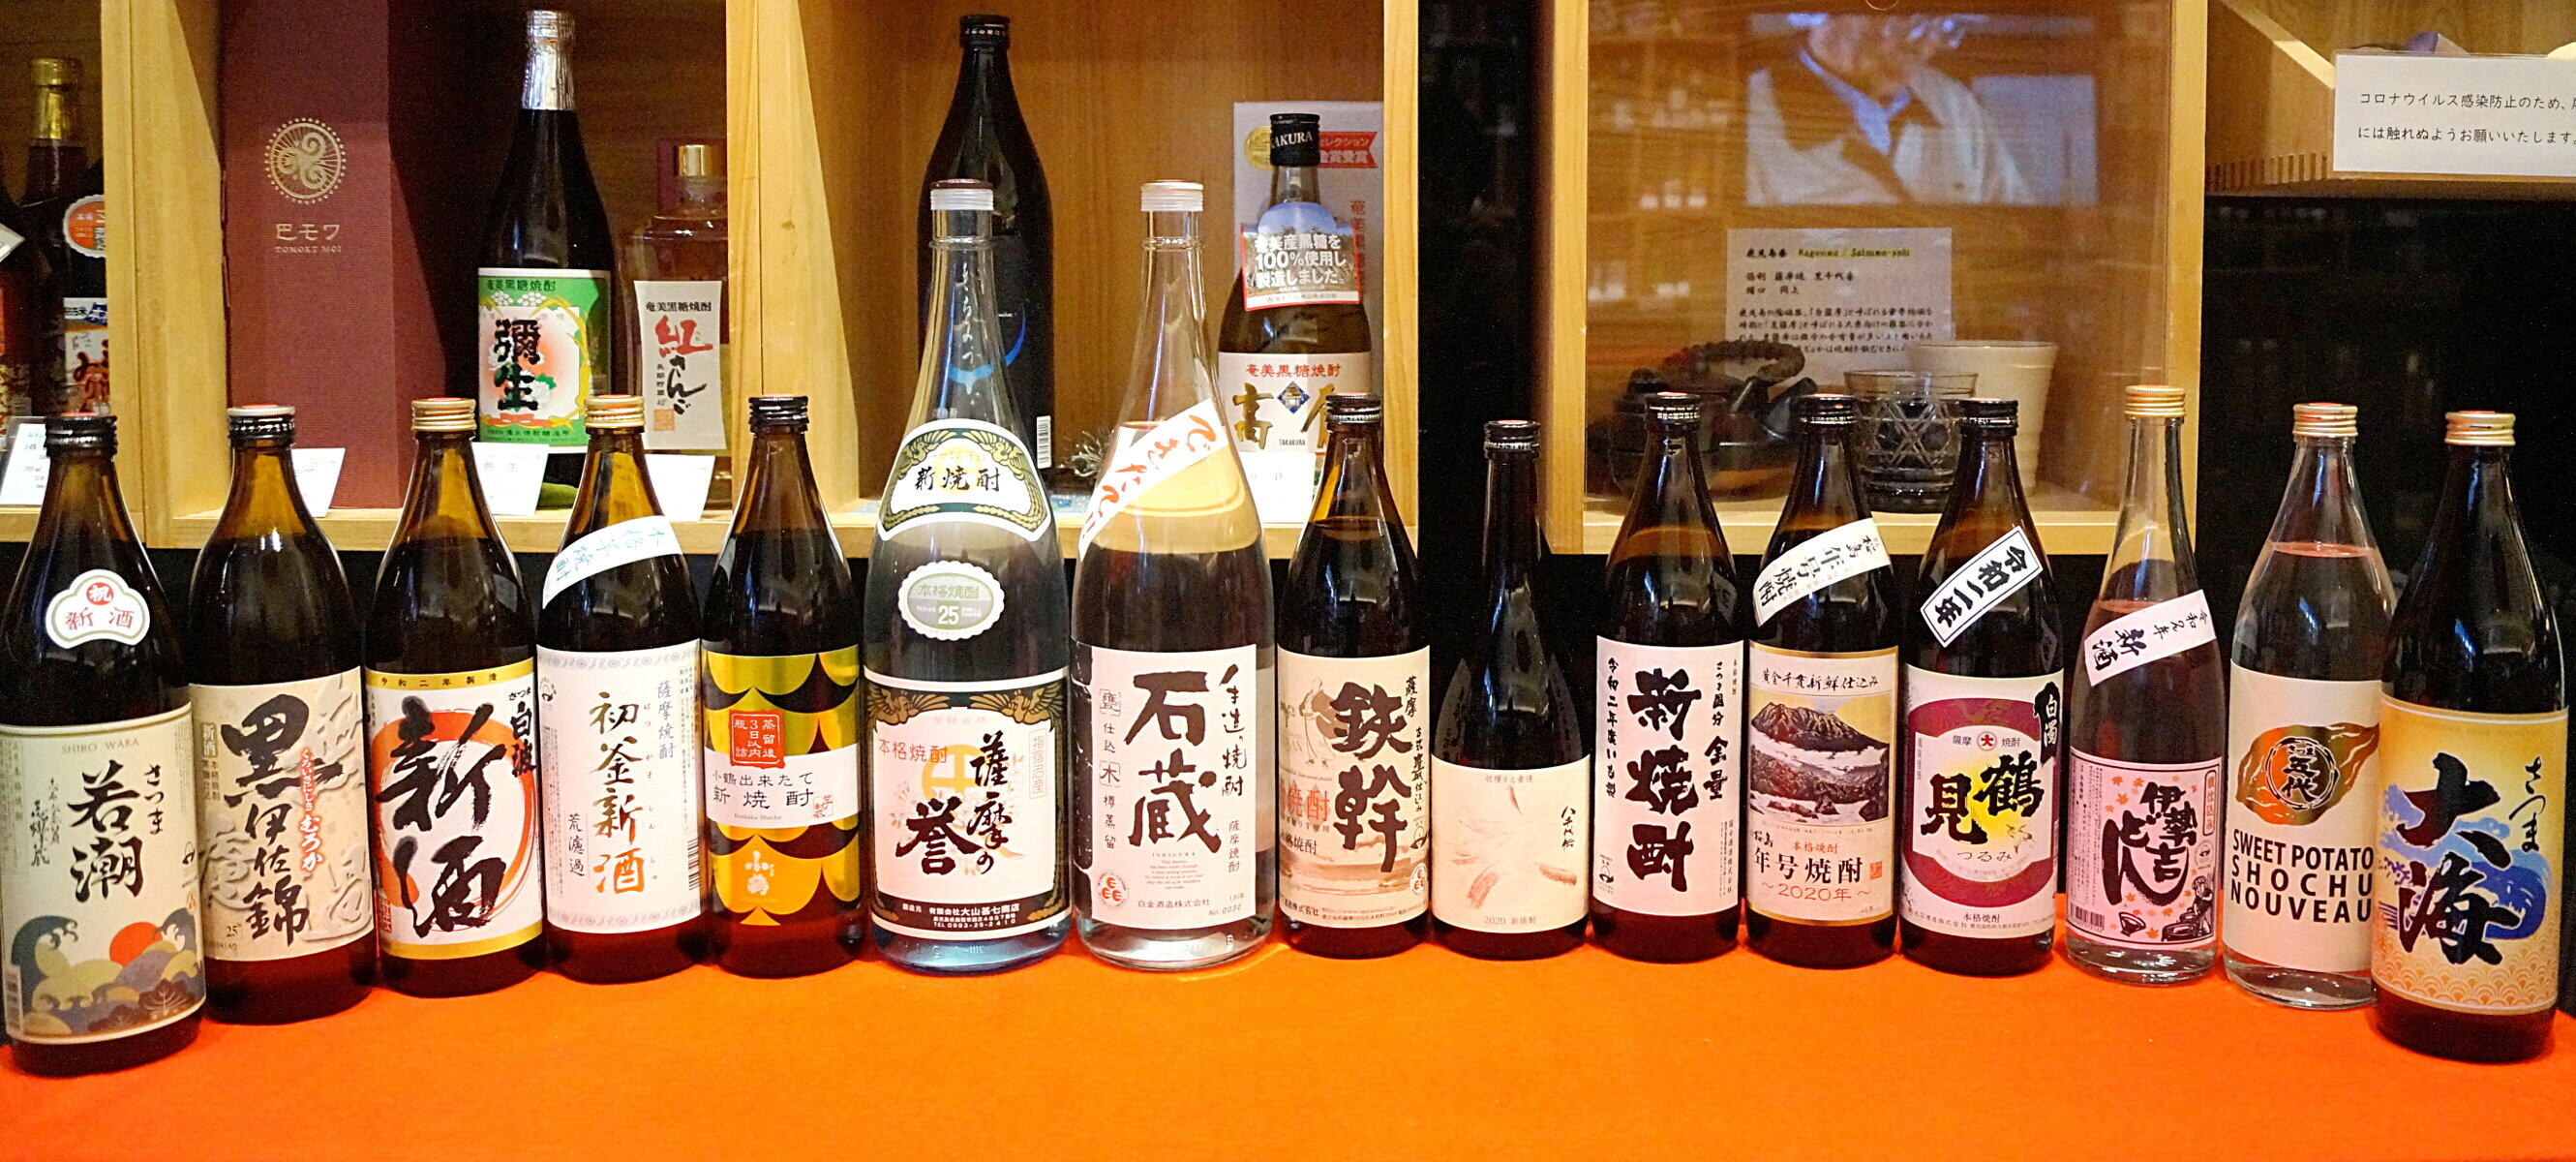 香り高い新酒が1杯100円　東京・西新橋で「本格焼酎&泡盛の日」記念イベント